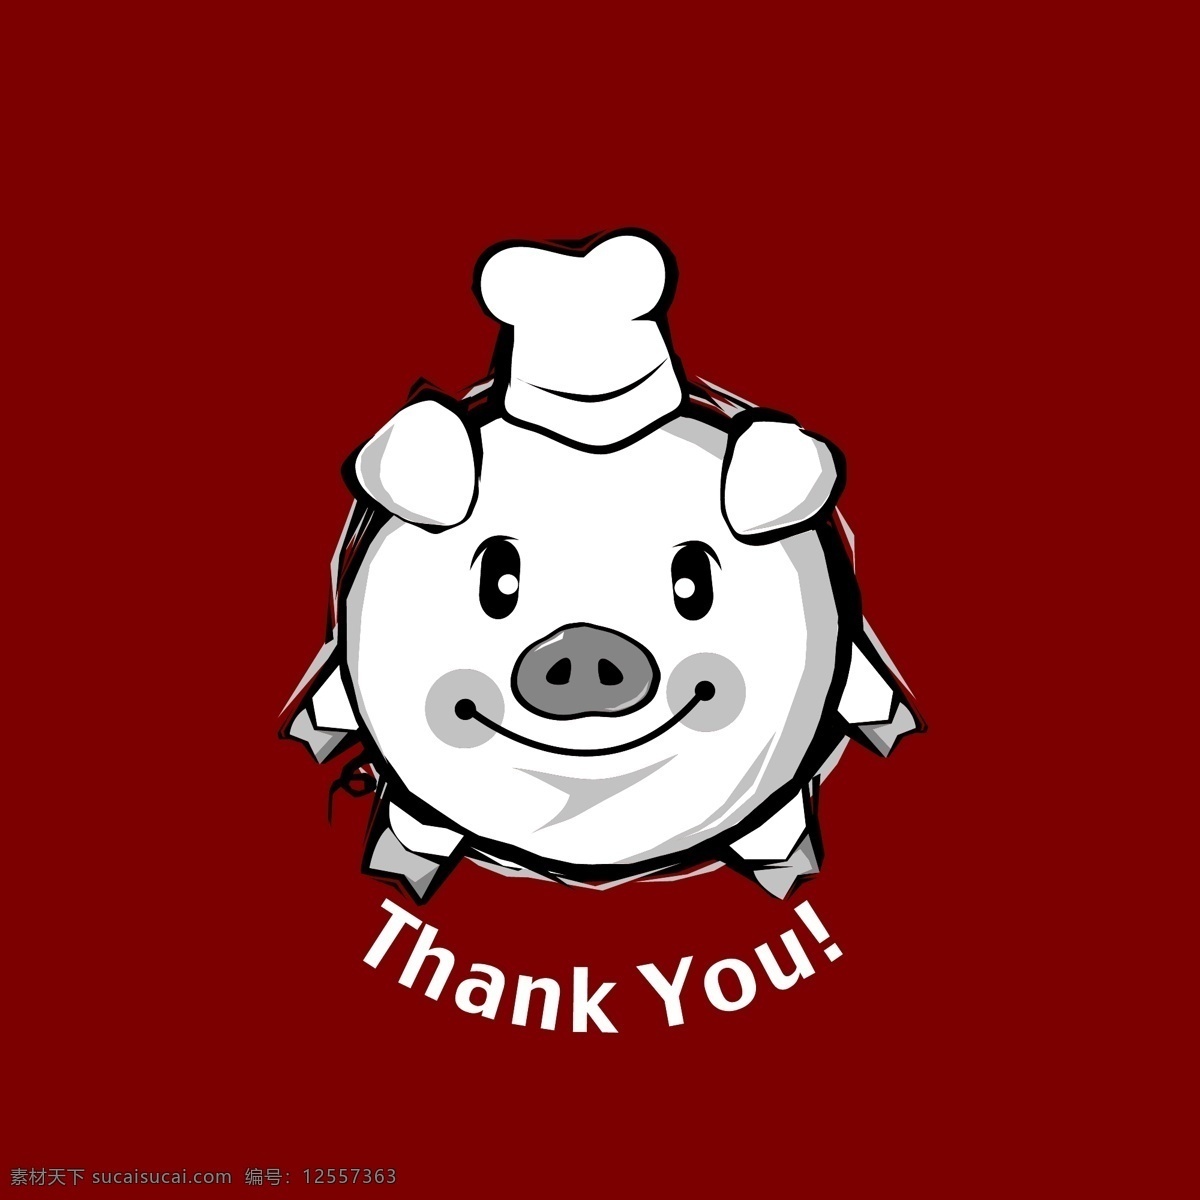 动物 插画 厨师 动物插画 家禽家畜 卡通猪 生物世界 谢谢 矢量 插画集